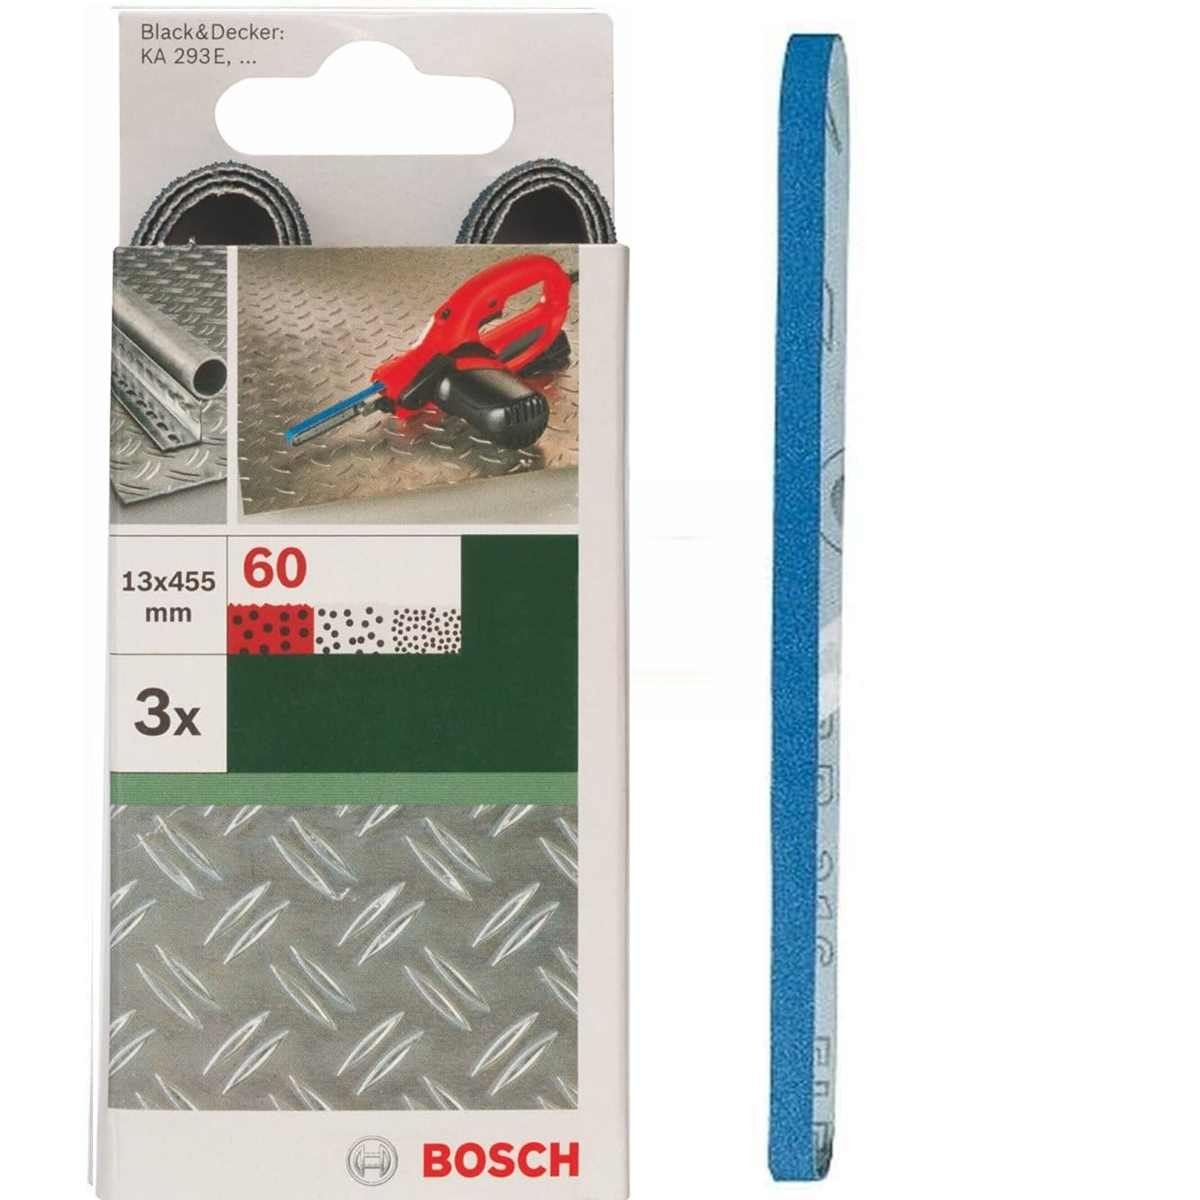 BOSCH Bohrfutter Bosch 3 Schleifbänder für B+D Powerfile KA 293E 13 x 451 mm, K 60